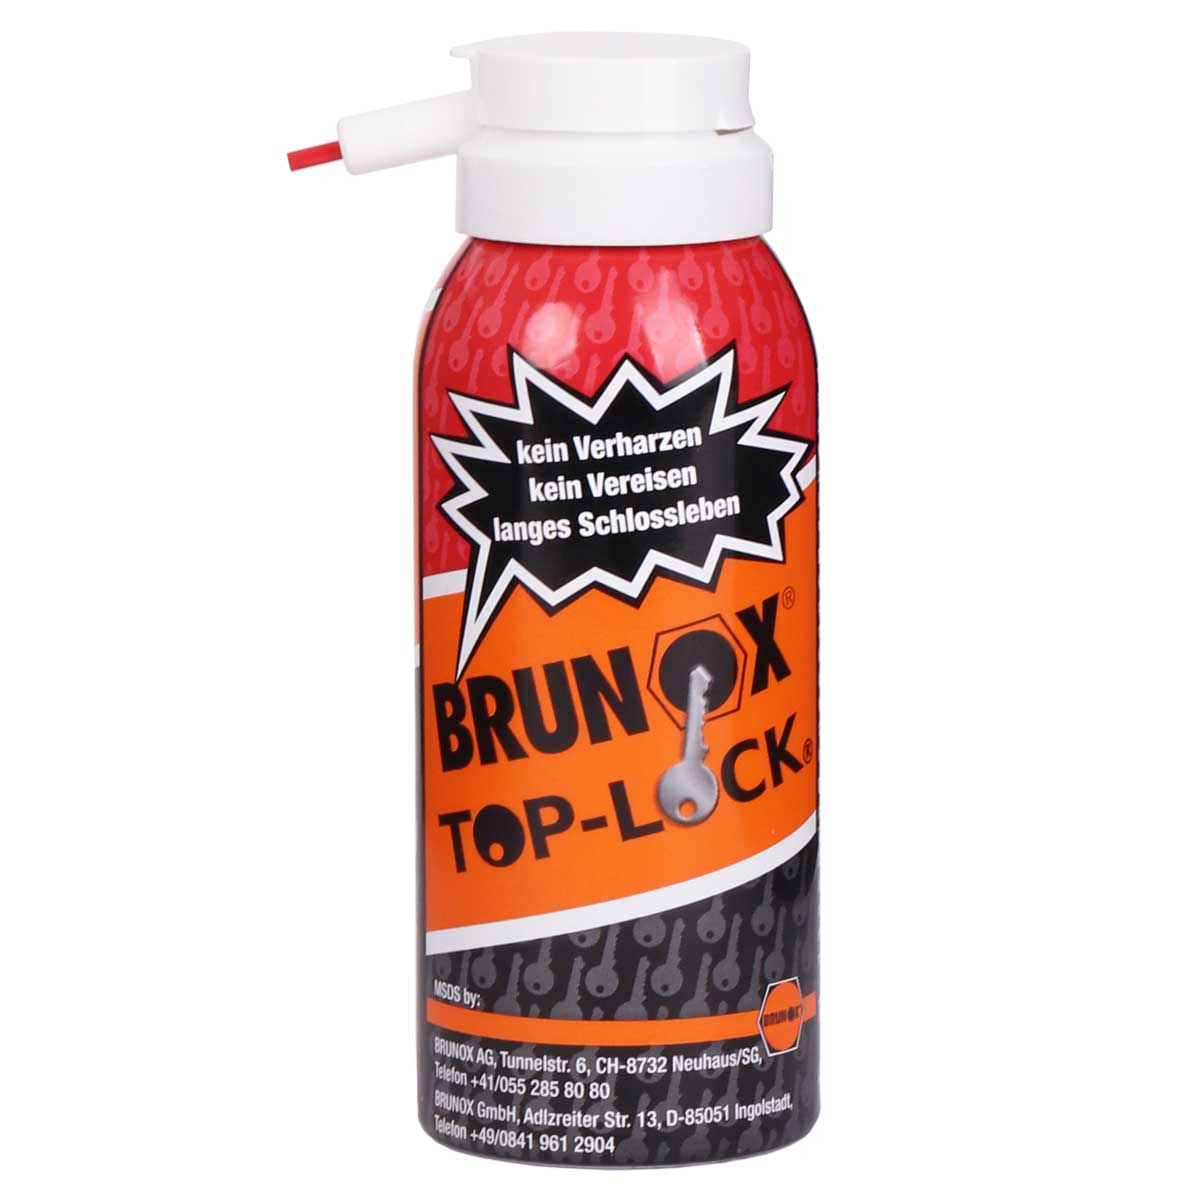 Productfoto van Brunox Top-Lock Lubricant Spray 100ml